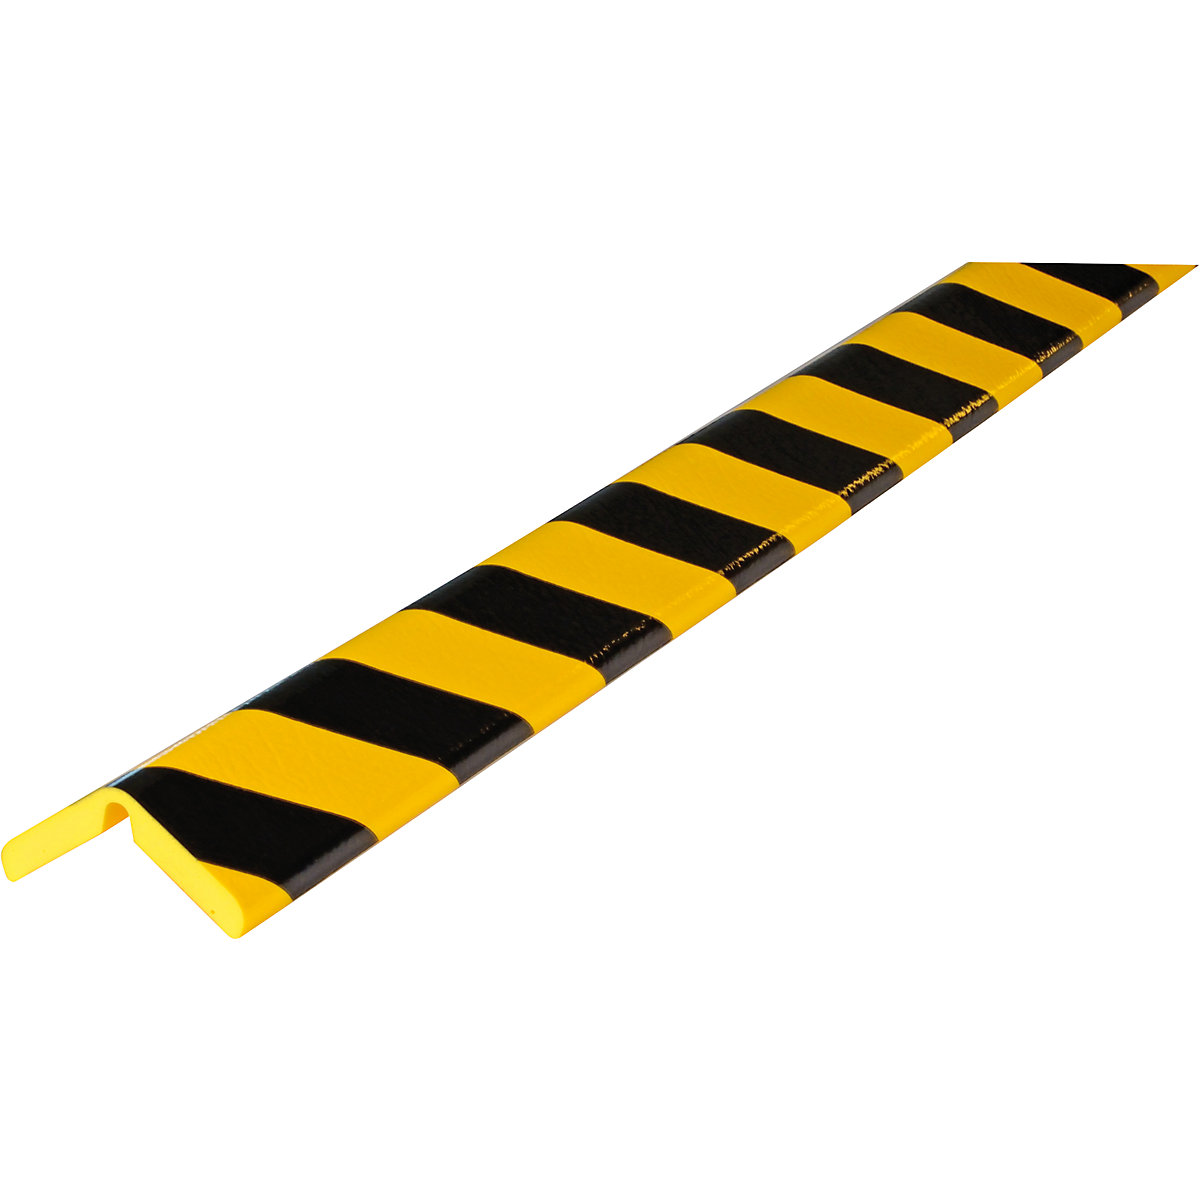 SHG – Proteção de cantos Knuffi®, tipo H+ FLEX, unidade de 1 m, preto/amarelo